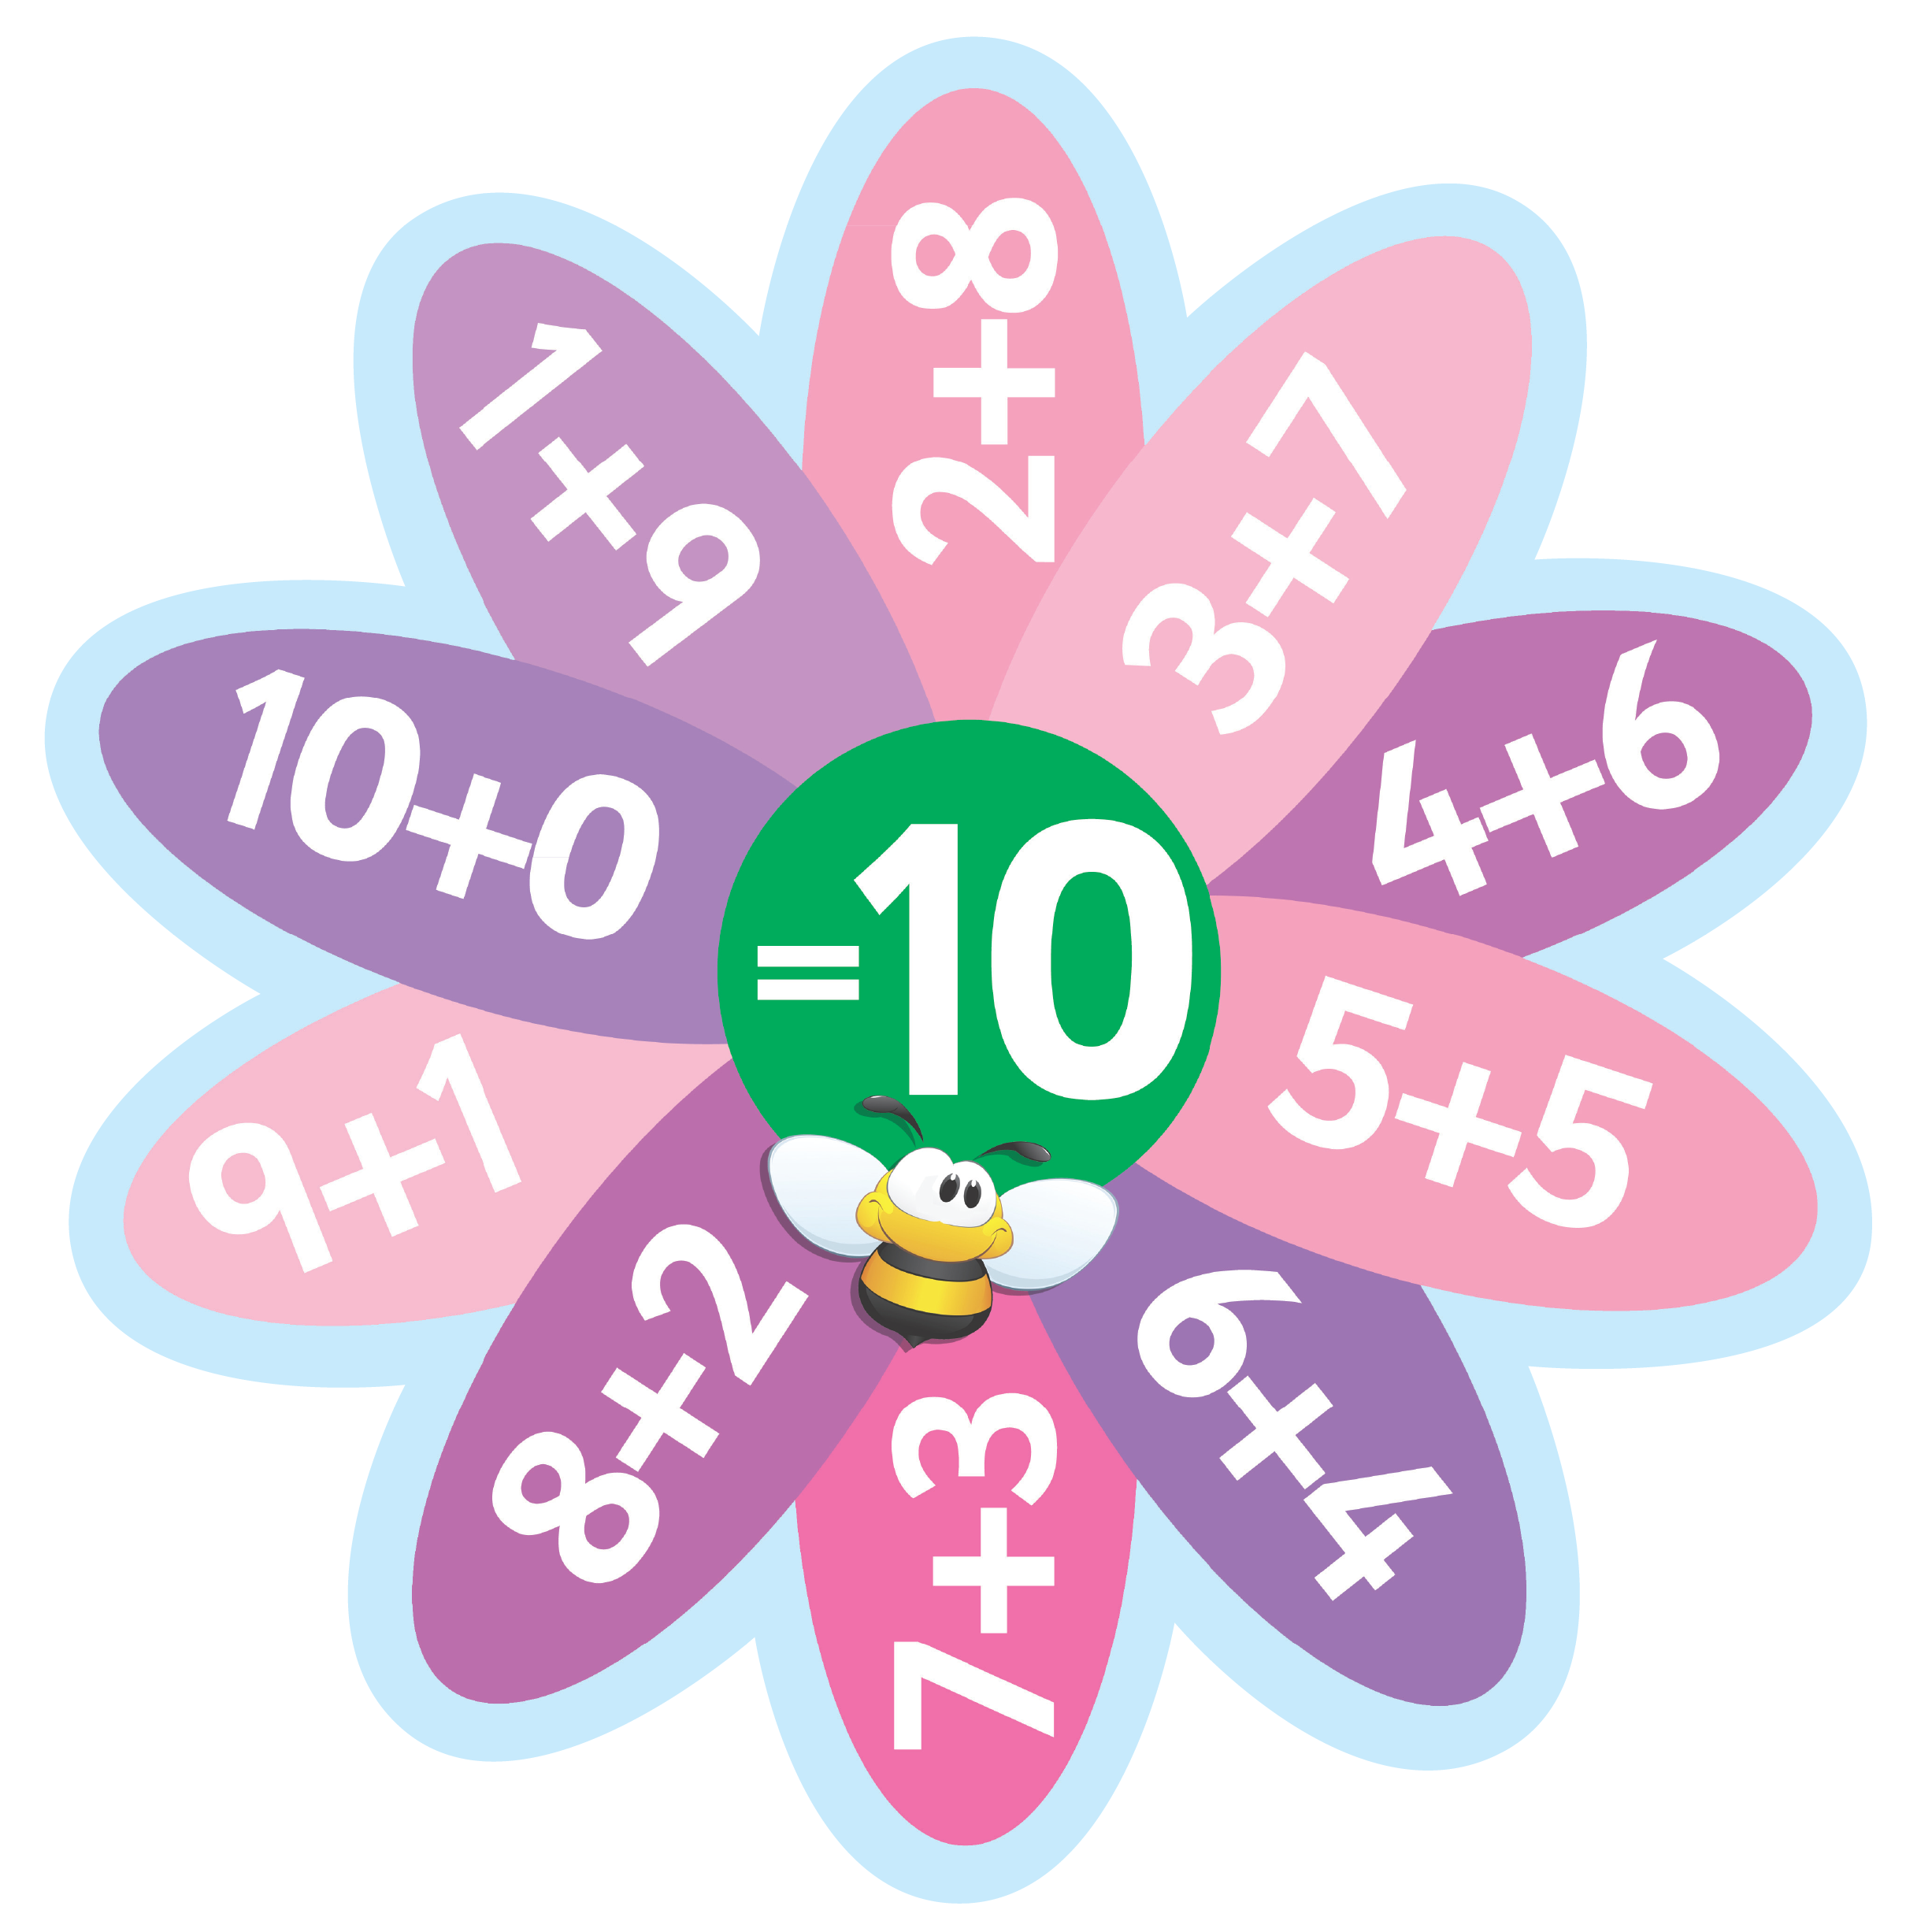 Complete Set of Number Bonds Signs inc. 2-10 & 20